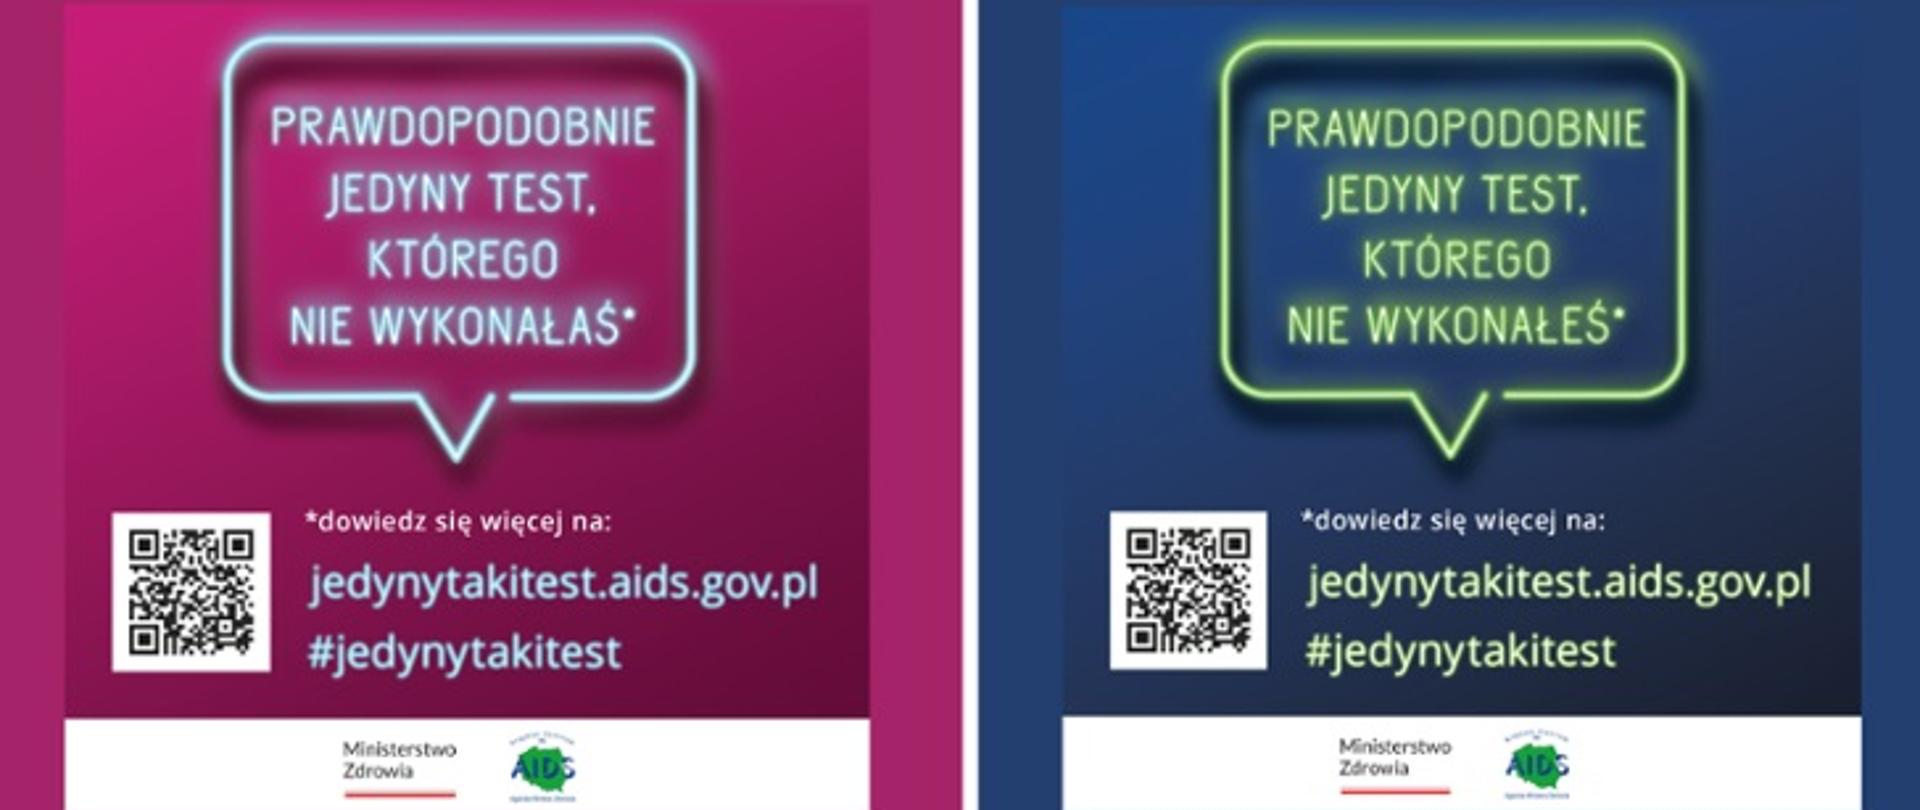 Grafika przedstawia napis "Prawdopodobnie jedyny taki test, którego nie wykonałeś/aś" oraz link do strony internetowej jedynytakitest.aids.gov.pl